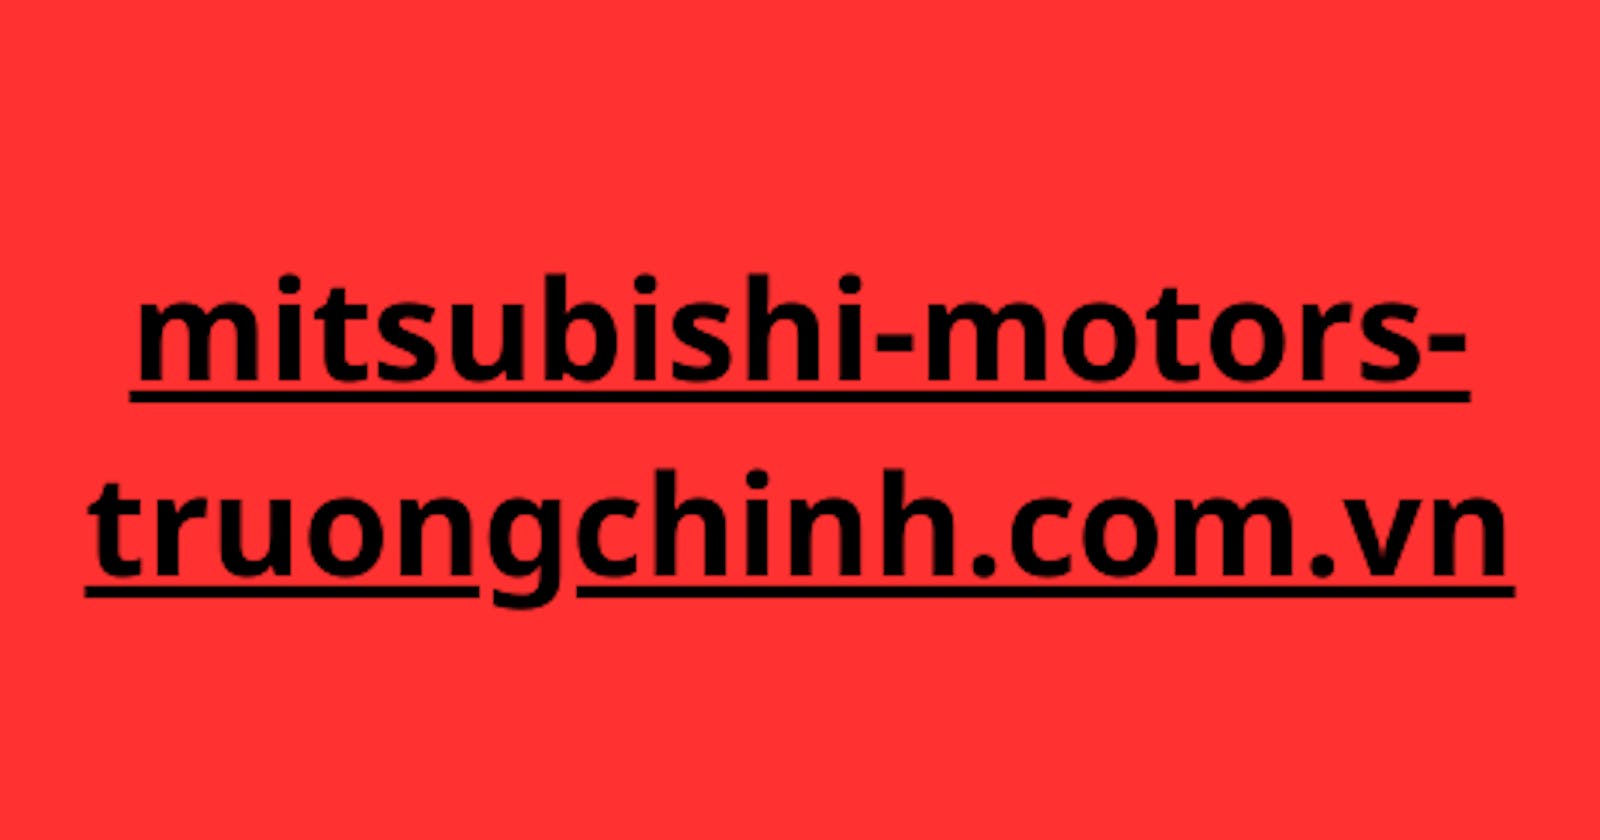 Hướng dẫn cơ bản về Mitsubishi-Motors-Truongchinh.com.vn: Nguồn đáng tin cậy cho mọi nhu cầu về động cơ Mitsubishi của bạn